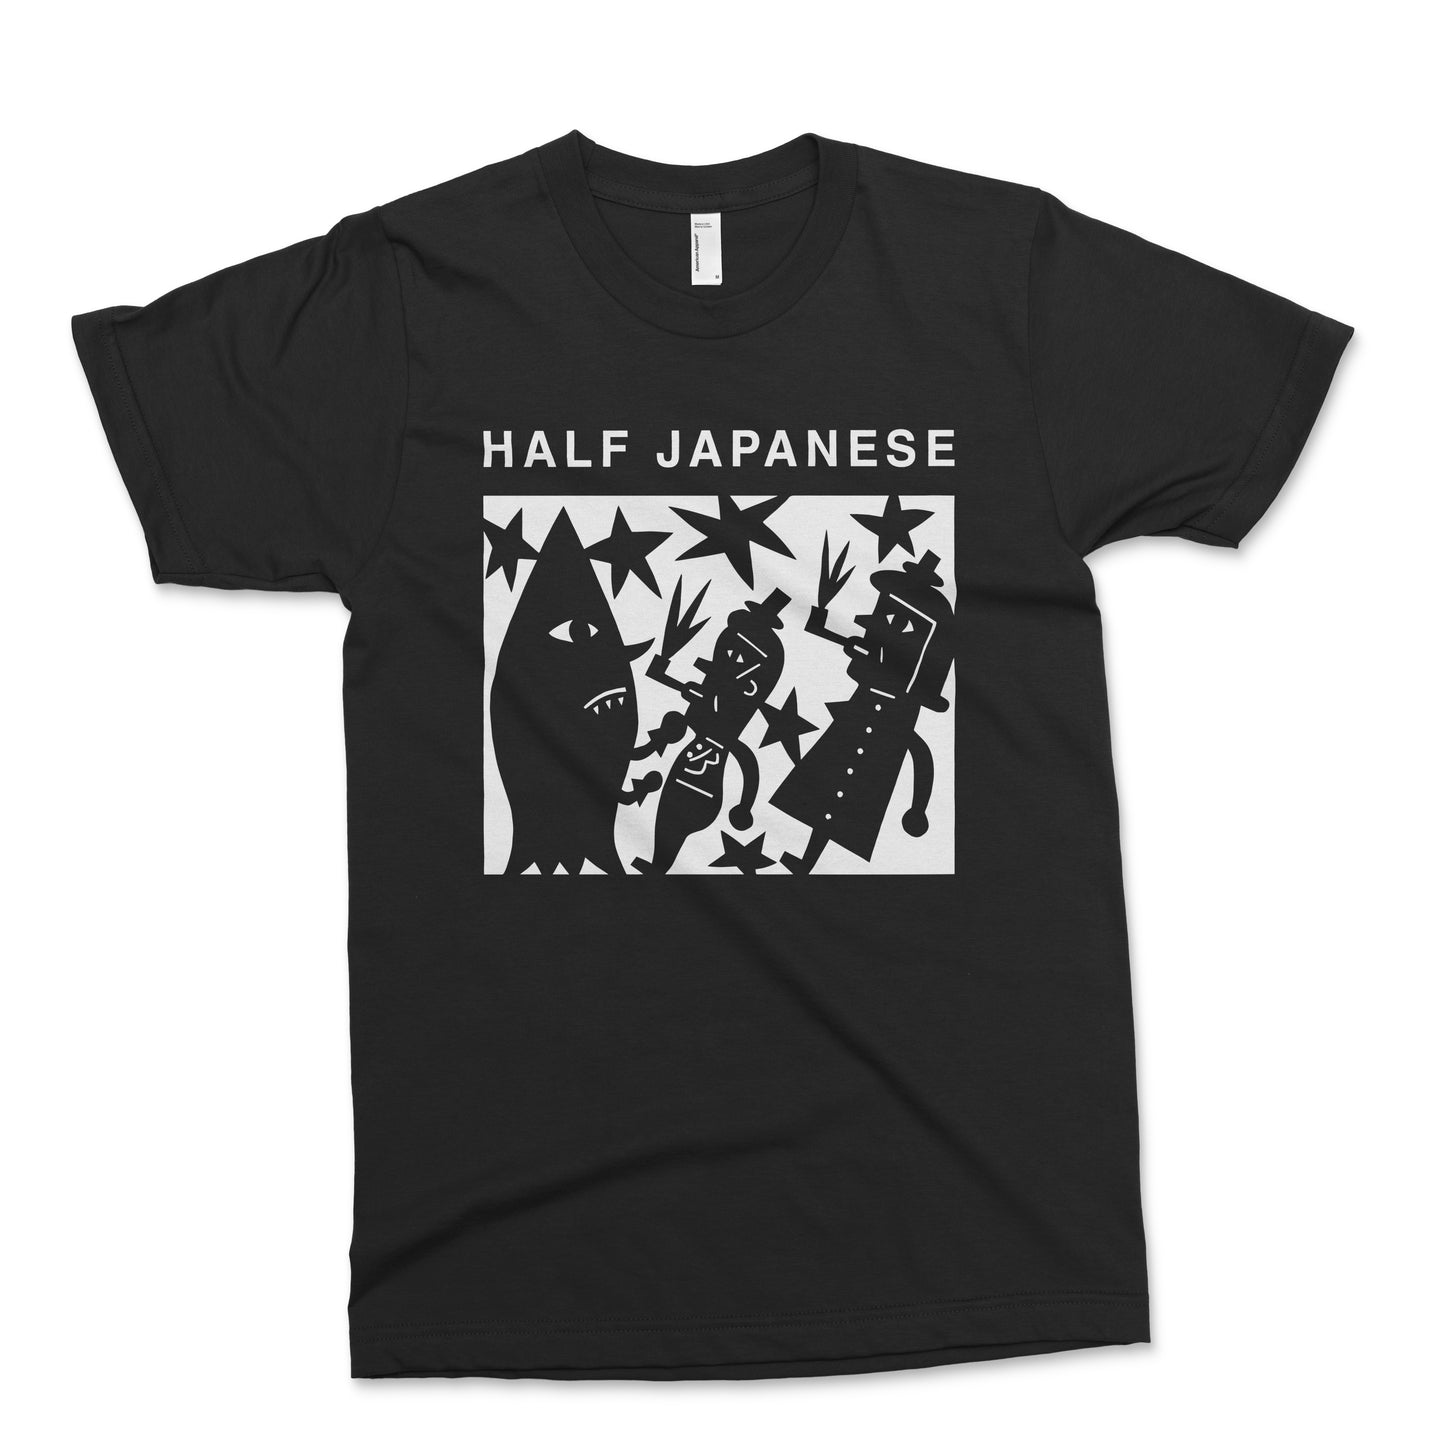 Half Japanese - Volume 1 T-Shirt